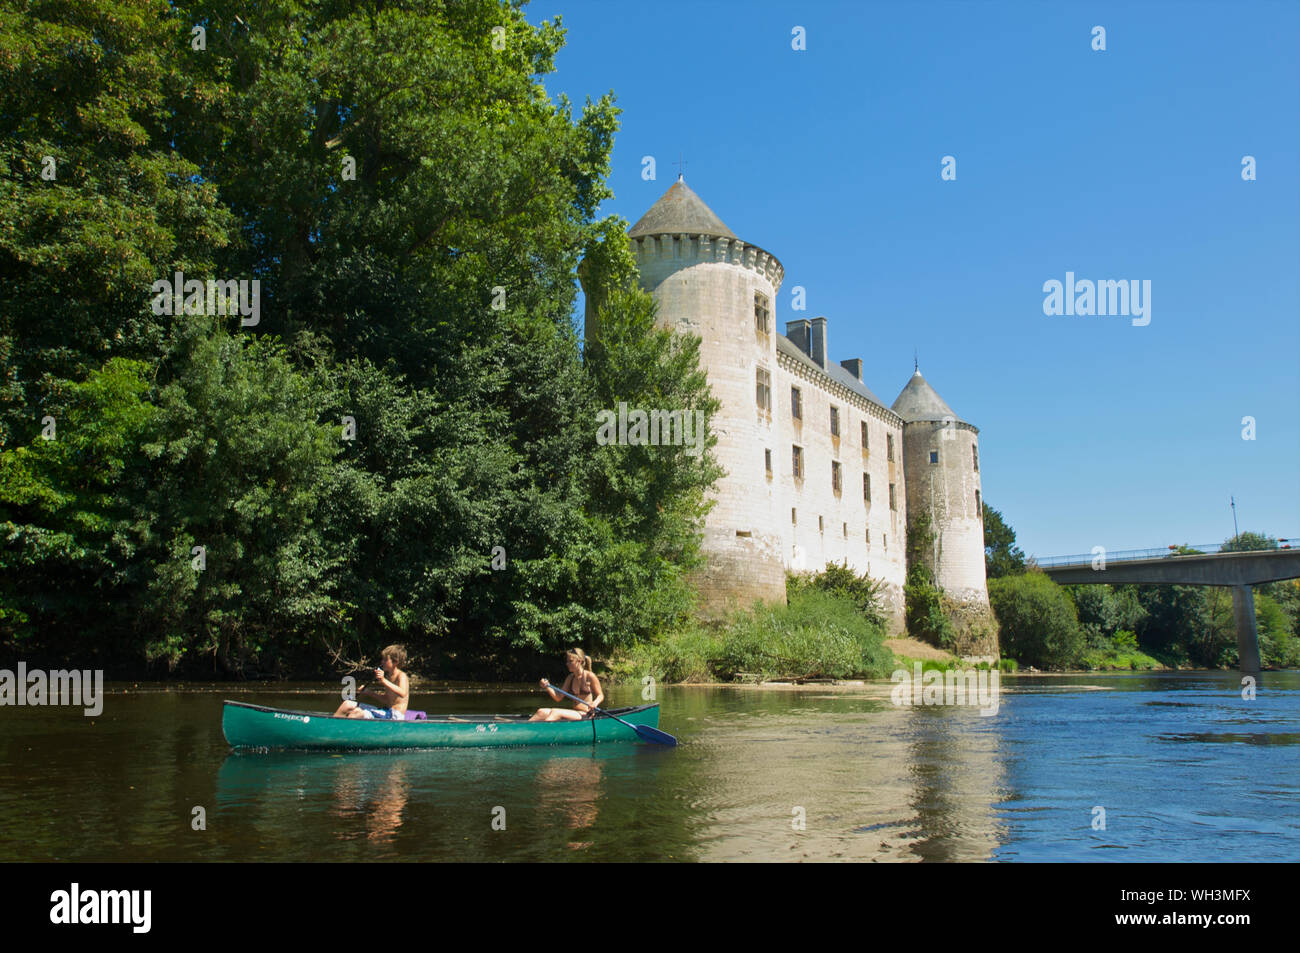 Le Château de La Guerche avec deux enfants dans un kayak sur la rivière La Creuse dans l'Indre et Loire, France Banque D'Images